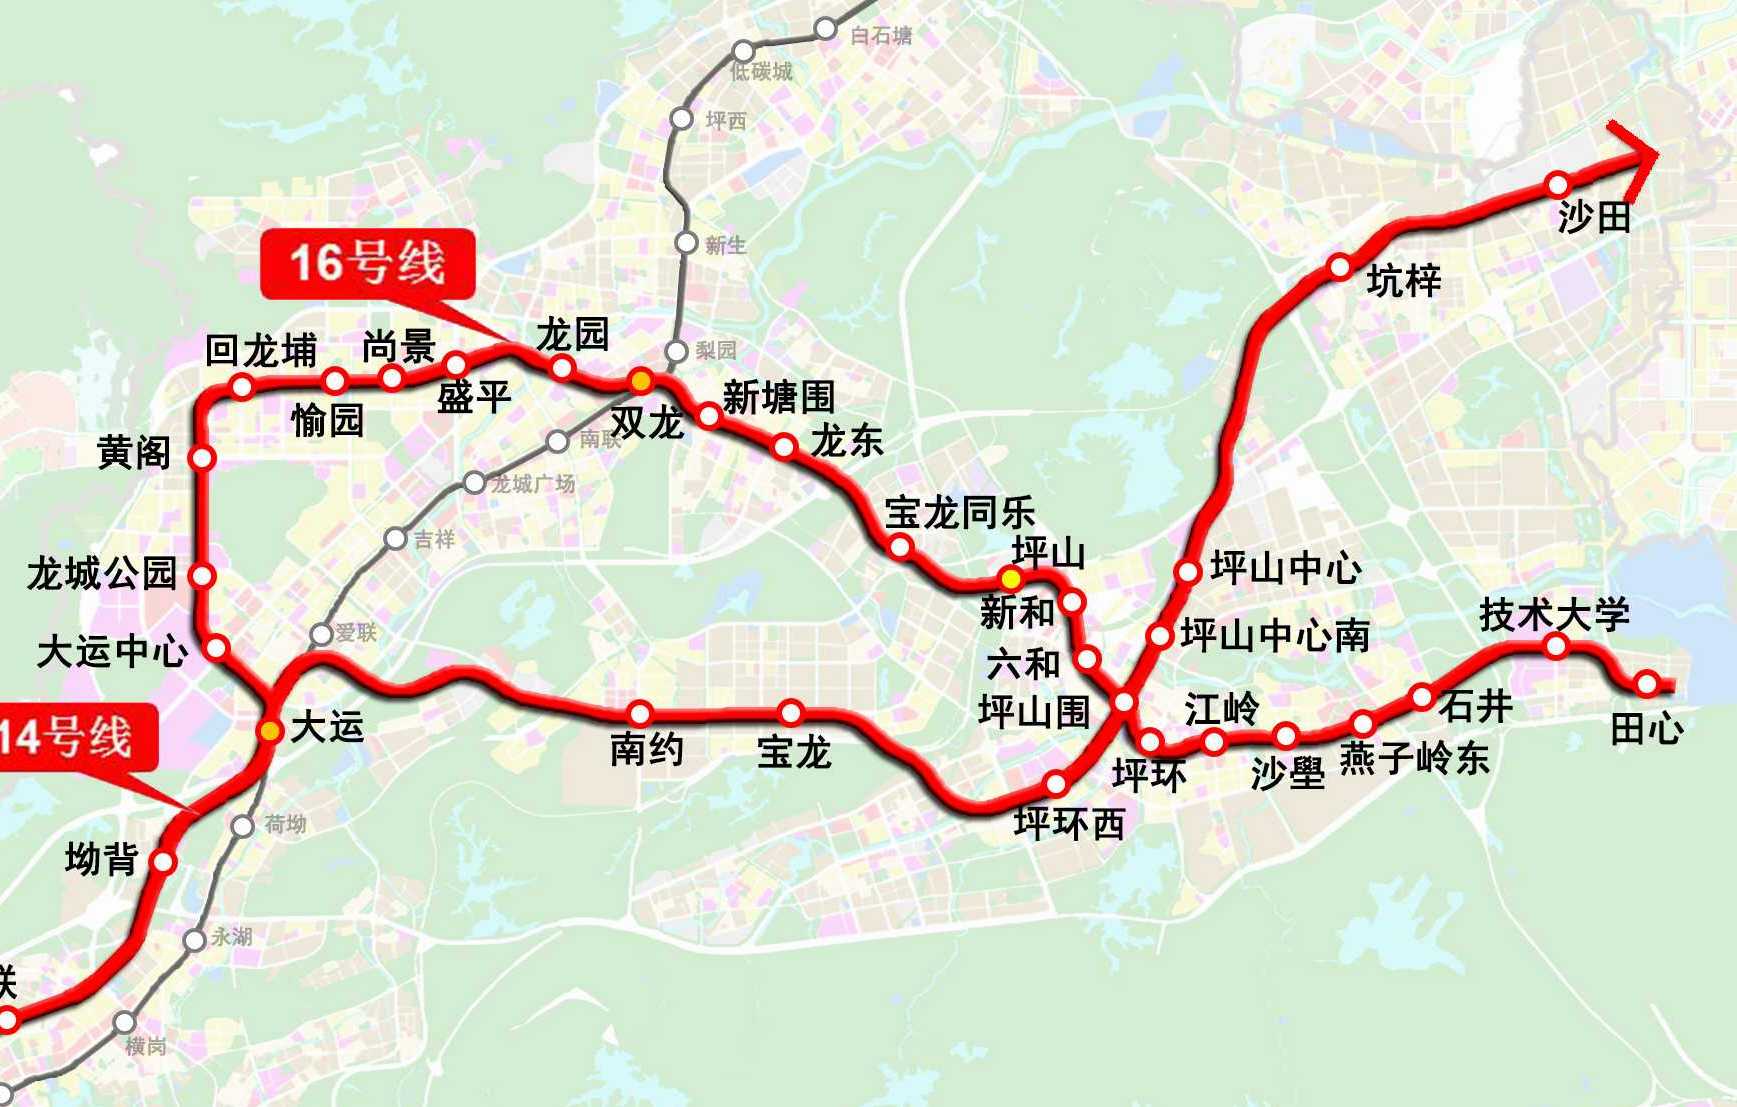 新和站(深圳捷運16號線站點)